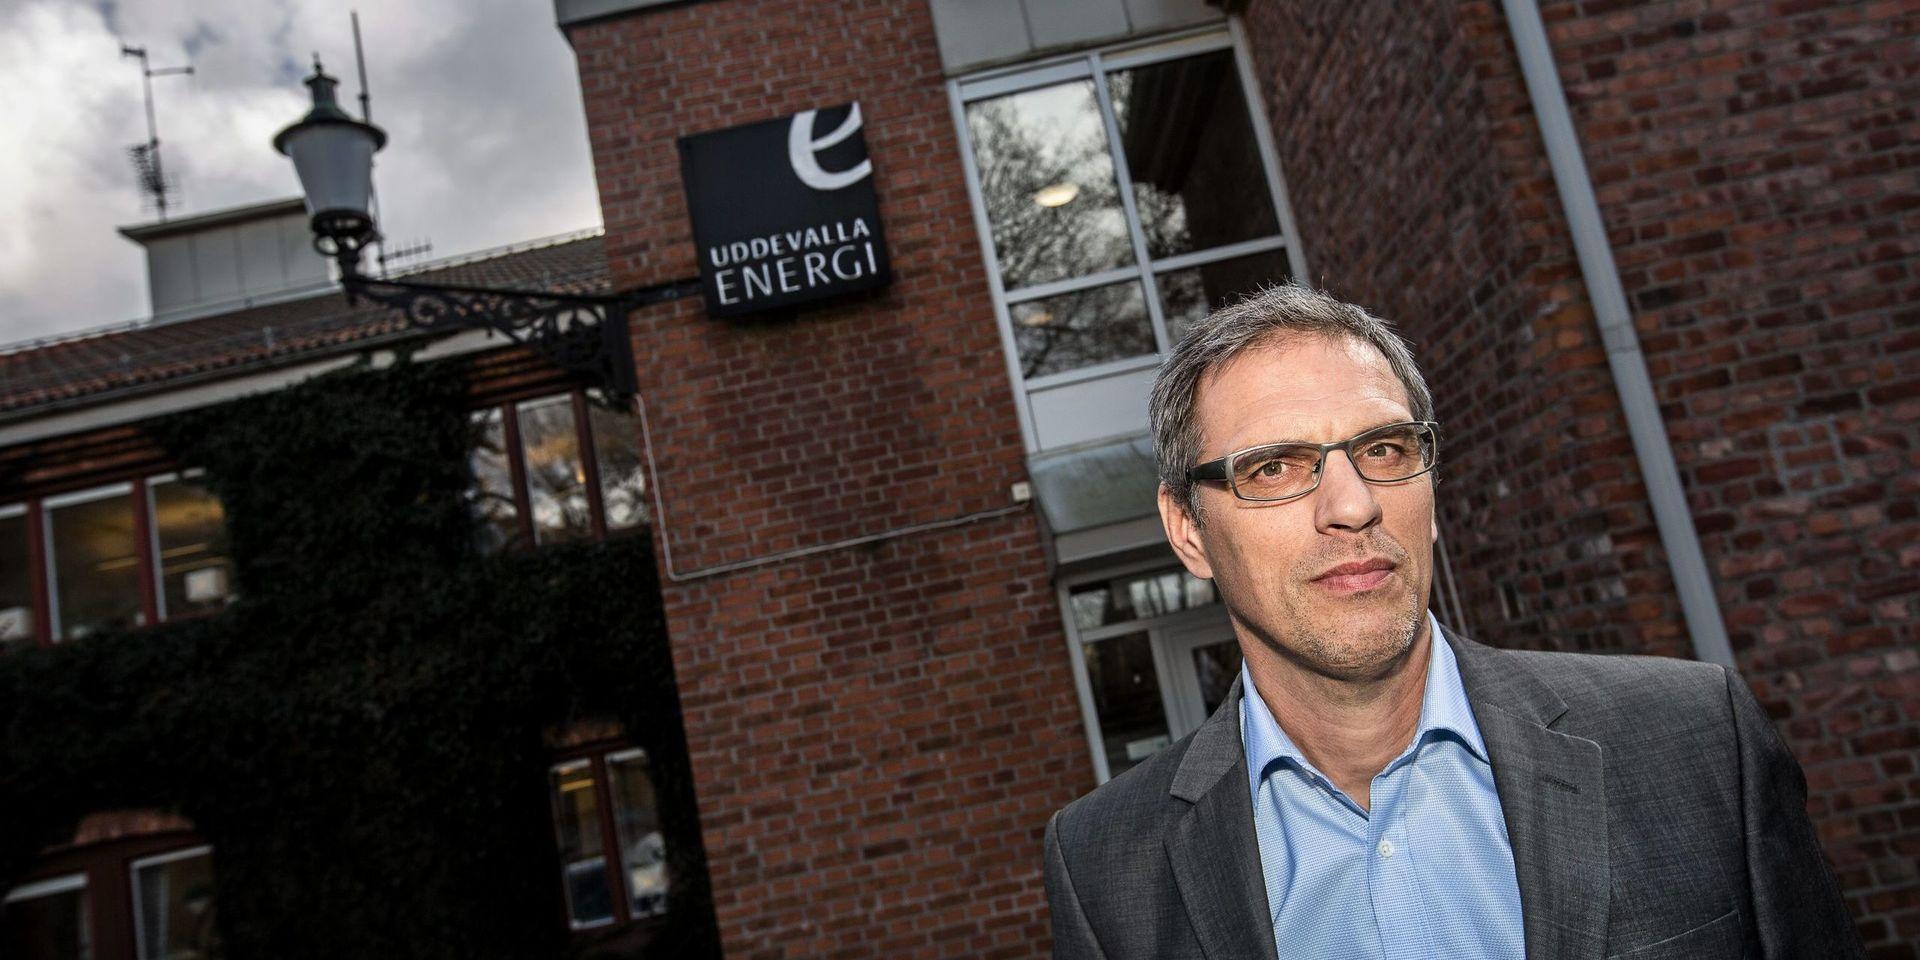 Björn Wolgast, vd på Uddevalla Energi, varnar för oseriösa dörrknackare som försöker sälja elavtal.